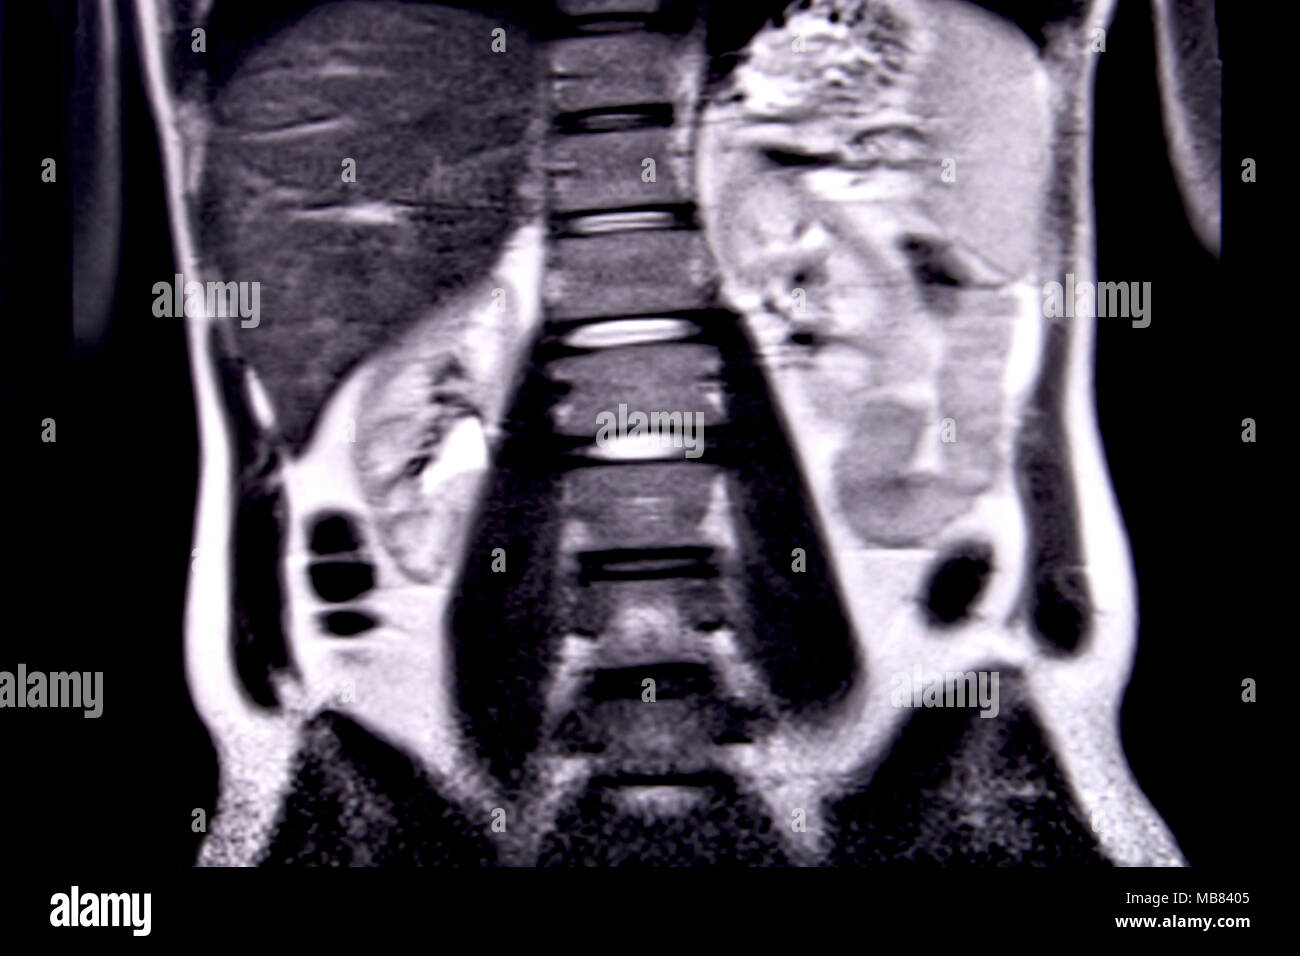 Balade à travers les droits de l'abdomen et la poitrine à l'aide d'IRM 18 coupes (vue coronale). Photo 9/18 Banque D'Images